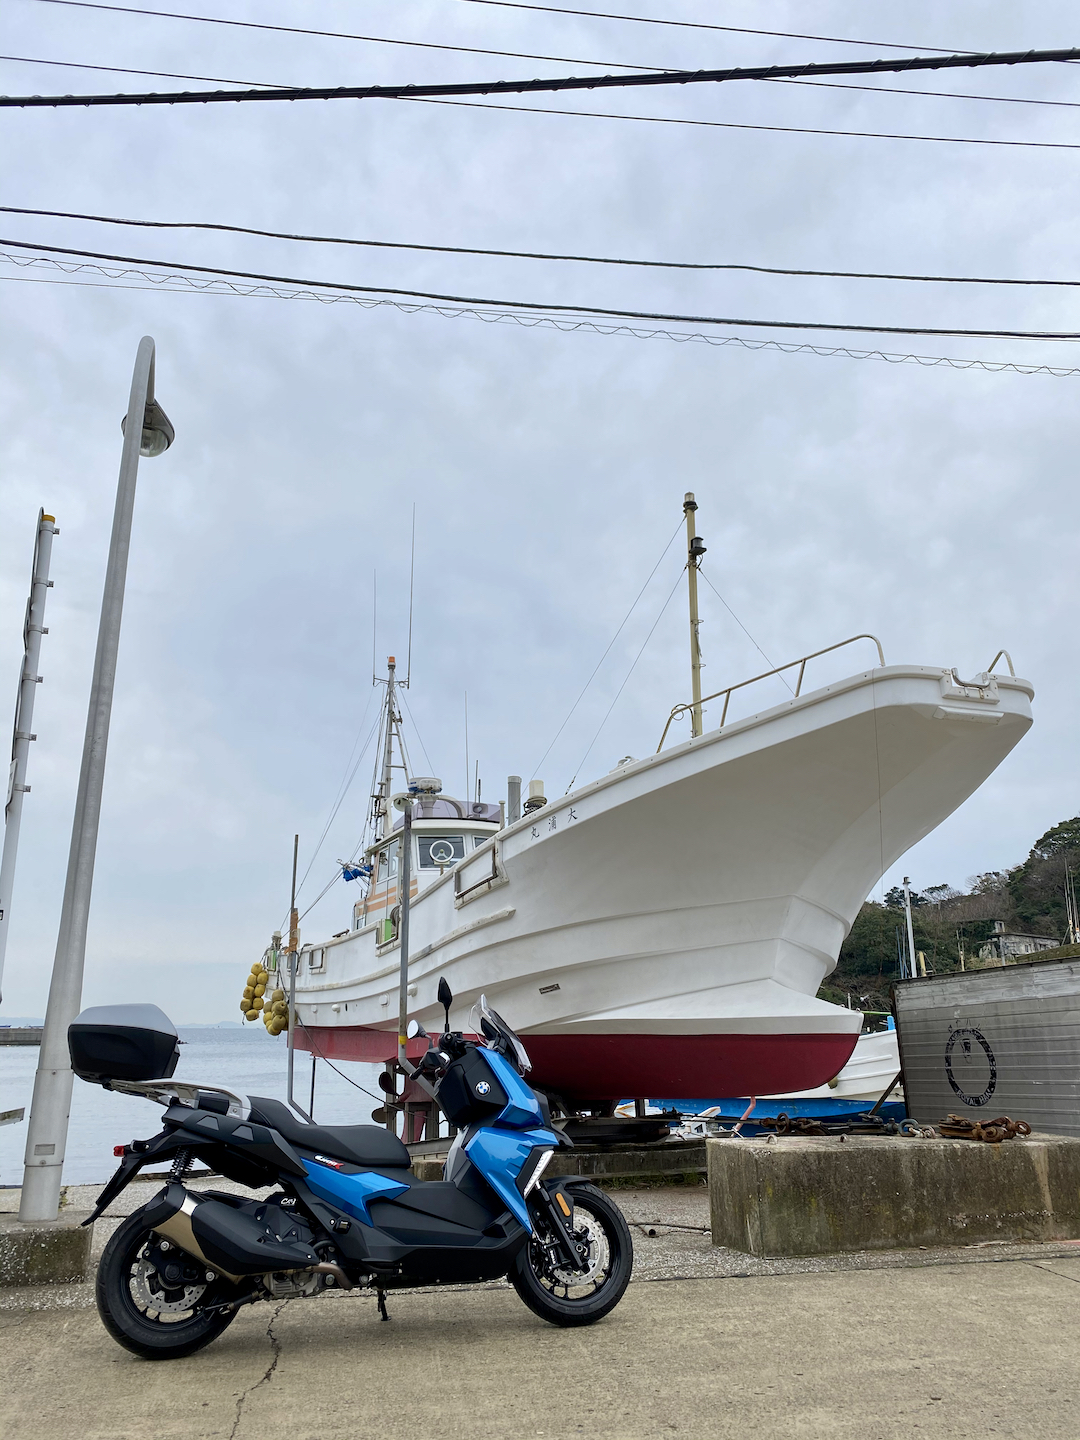 Maguchi fishing port